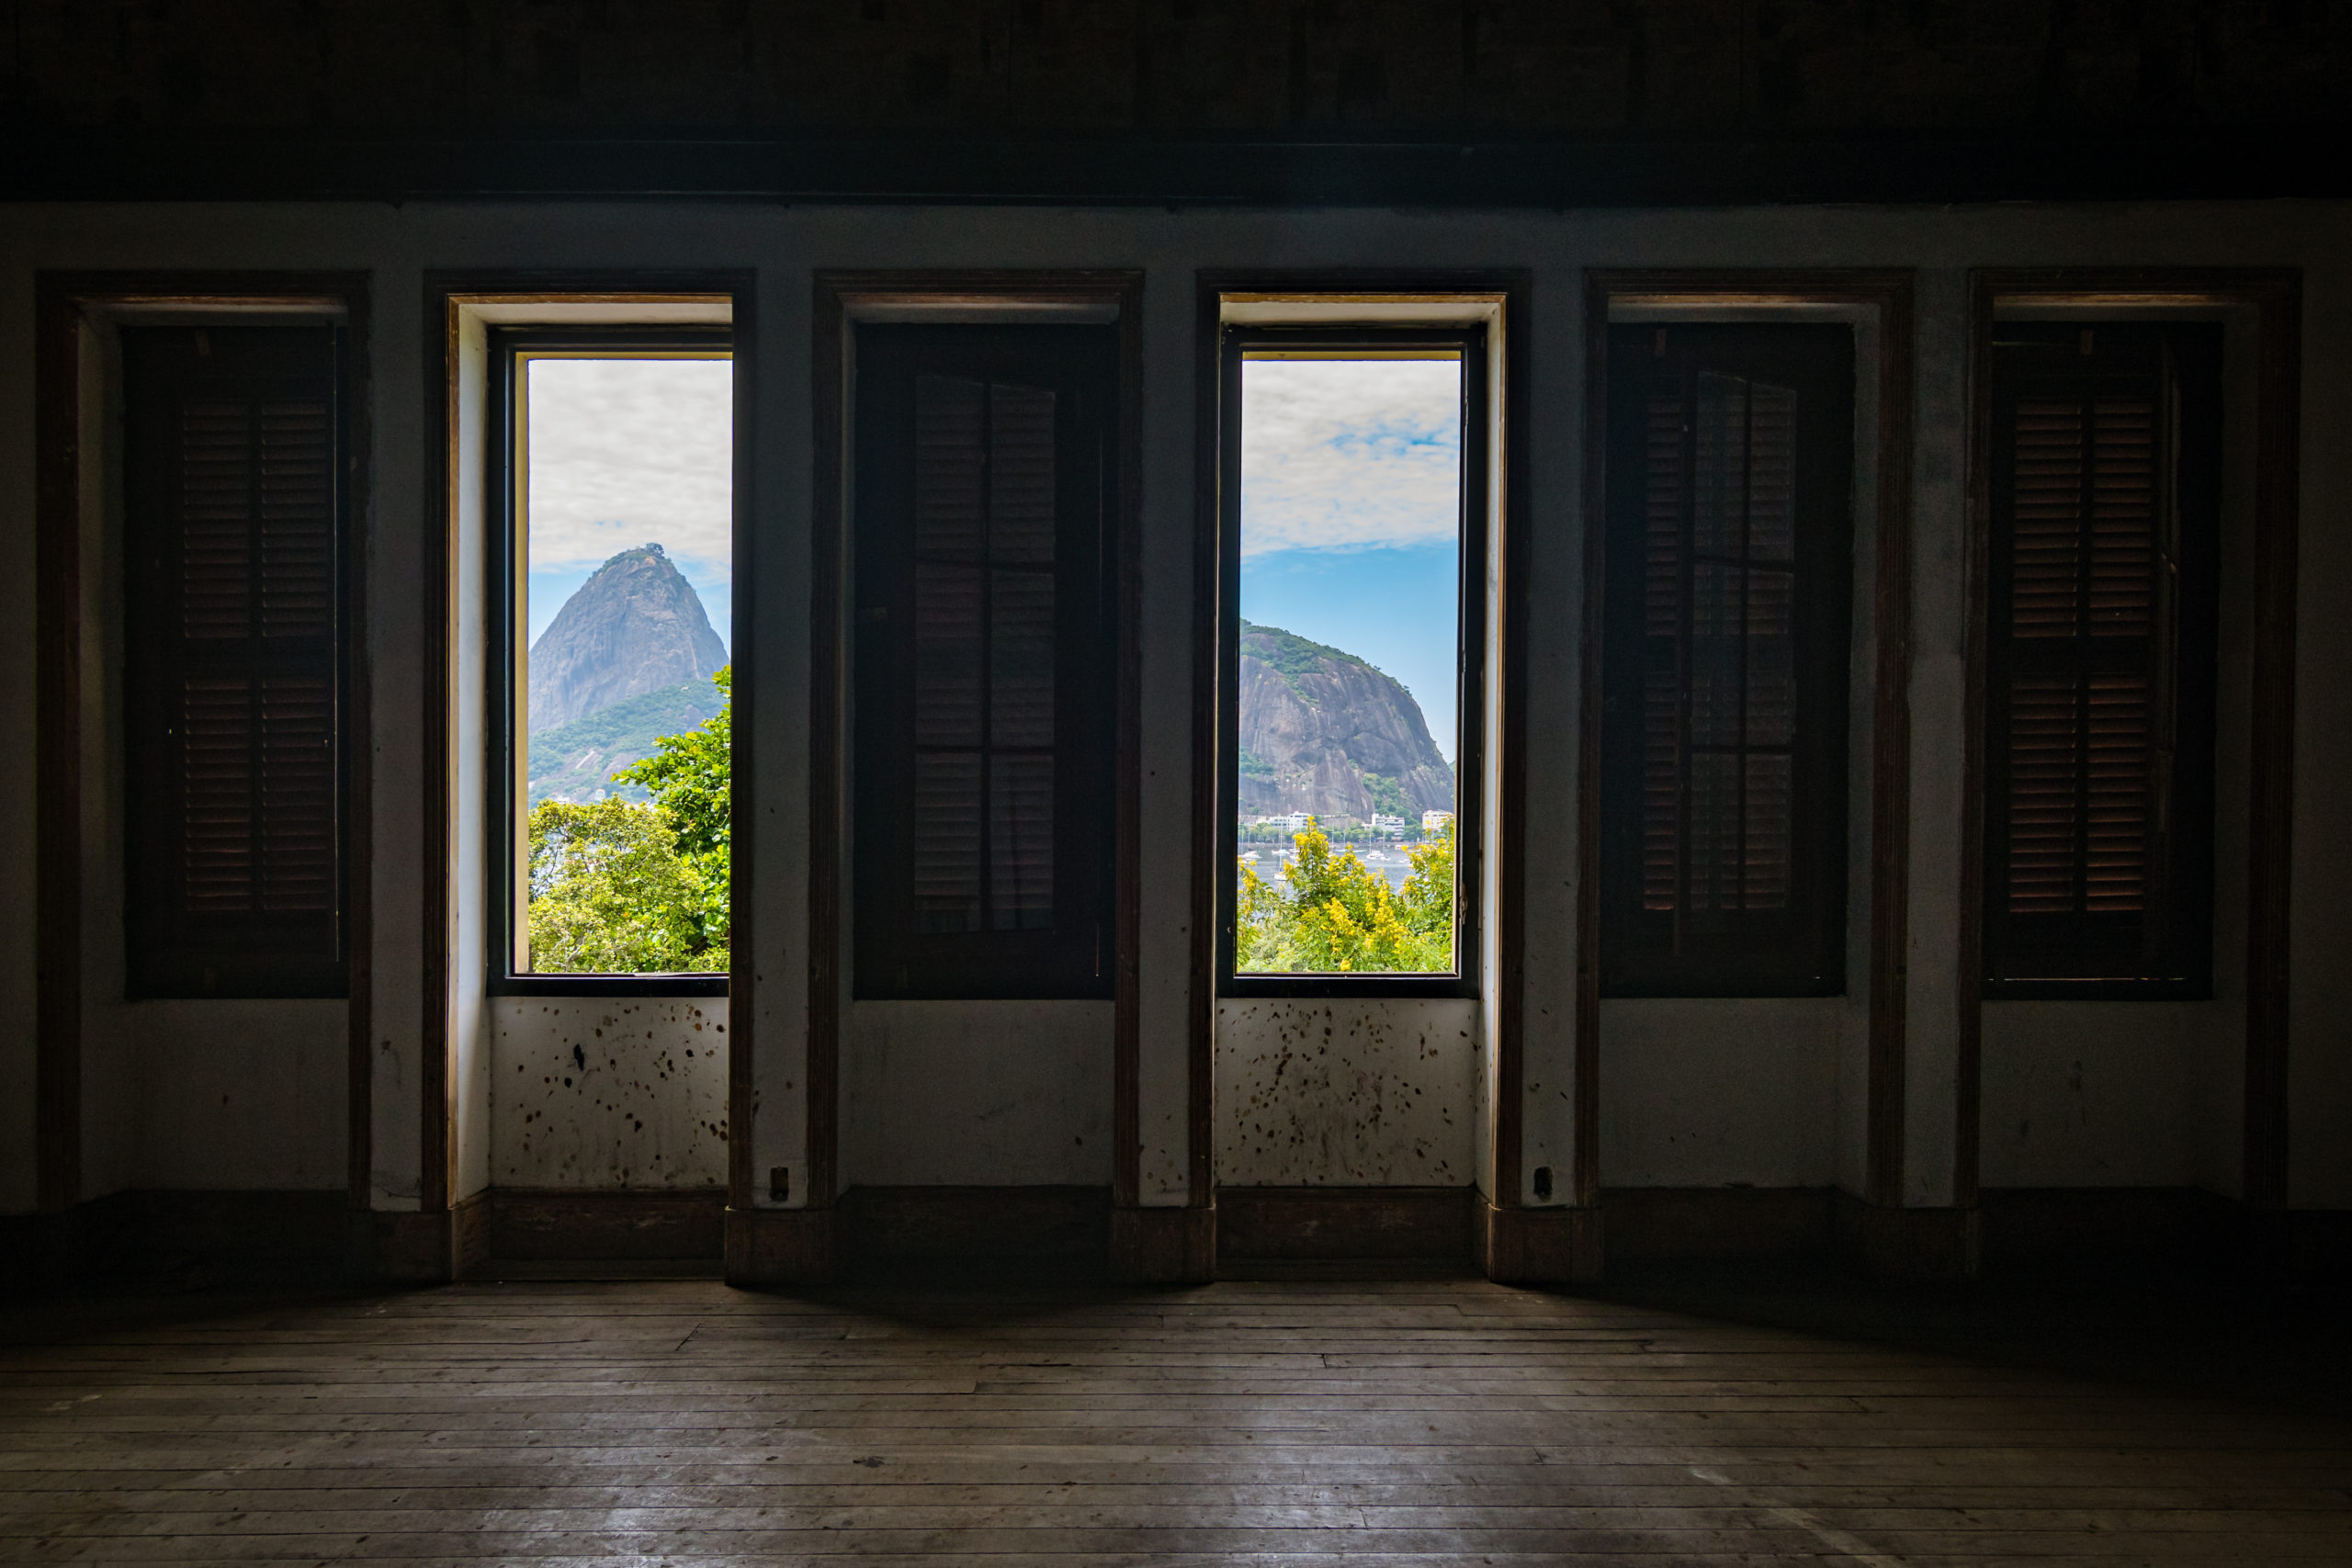 Uma parte da cidade e o pão de açúcar são vistos pela janela do Colégio Brasileiro de Altos Estudos